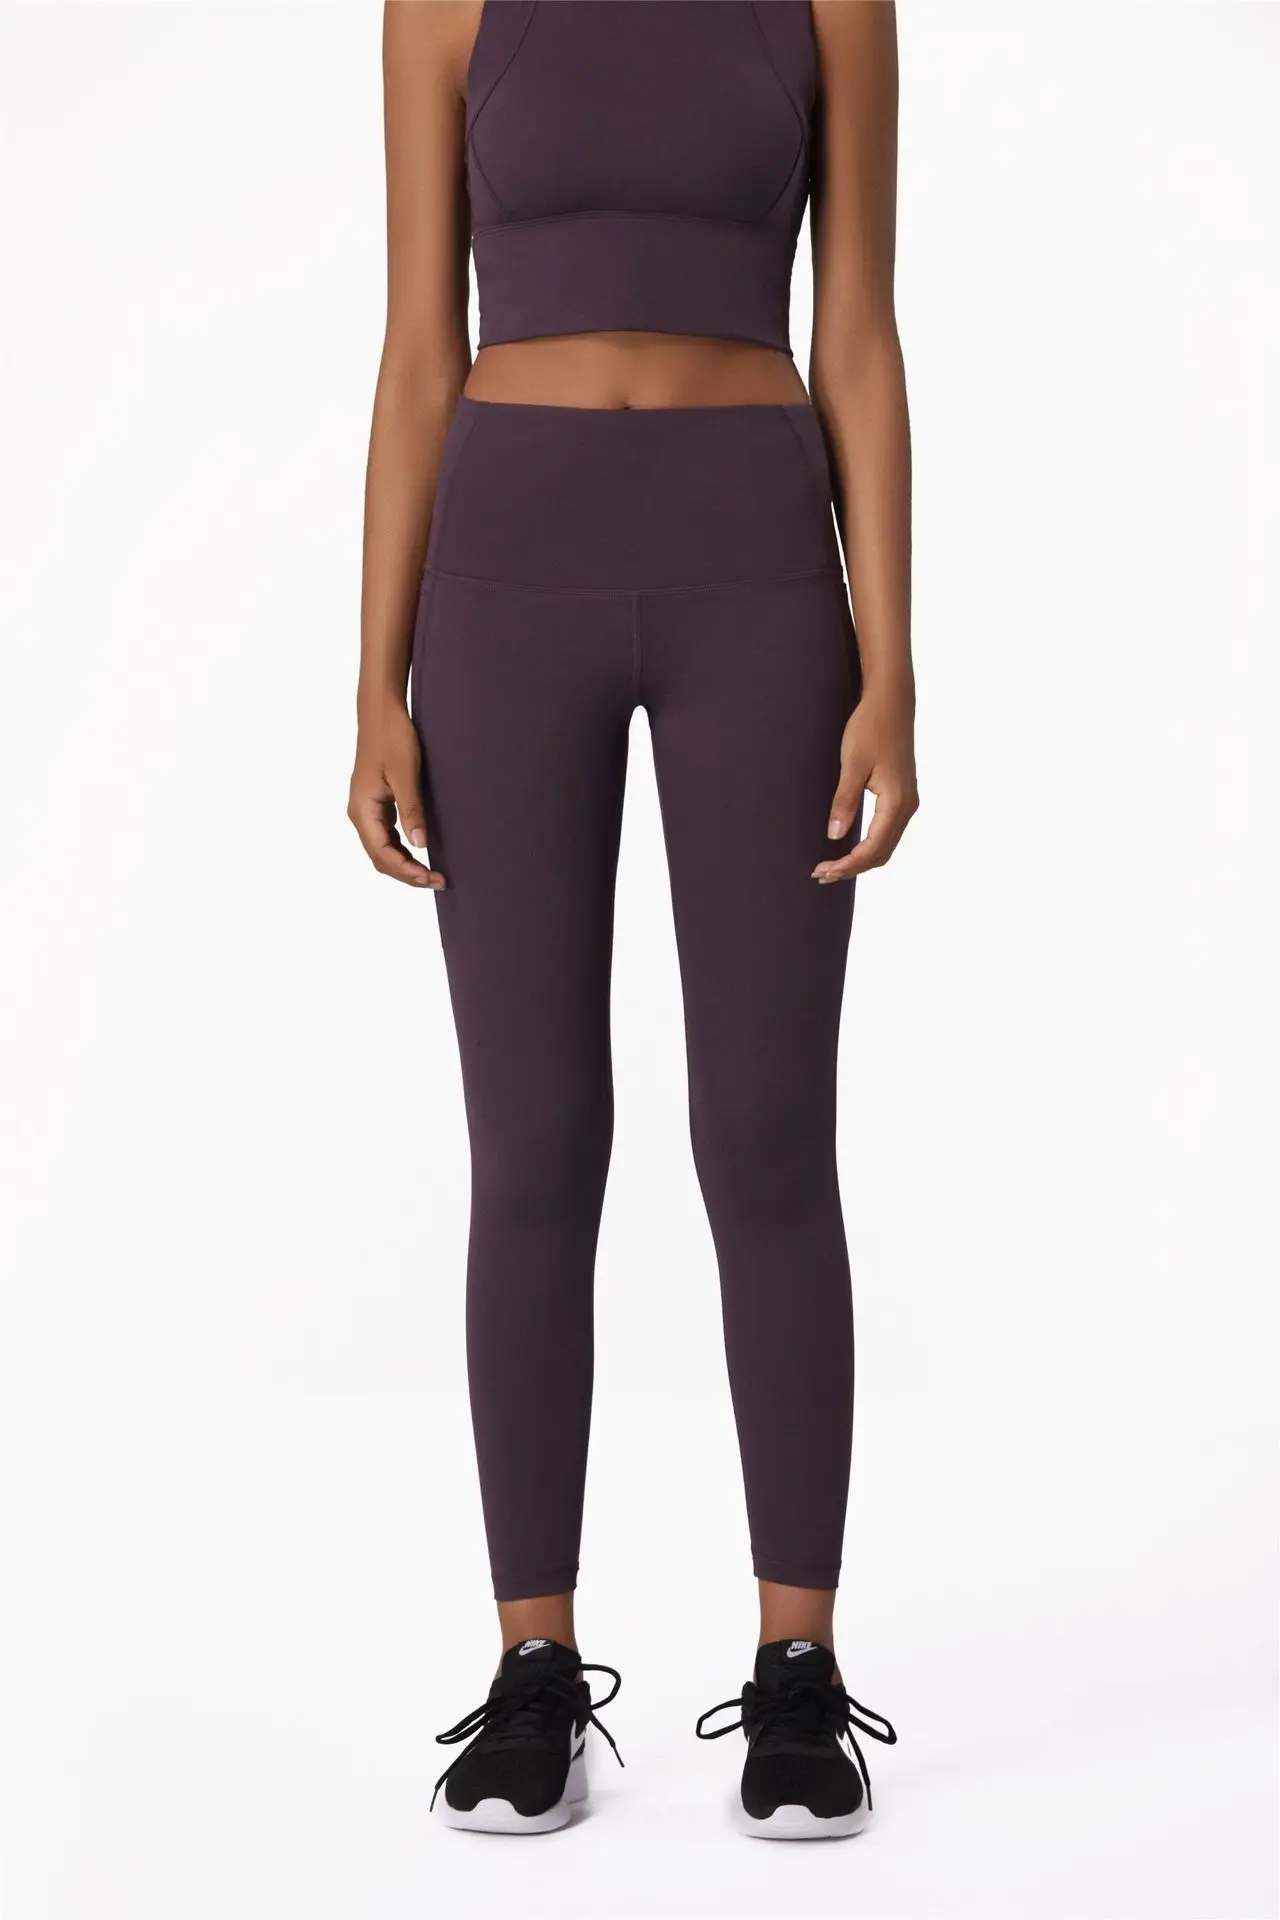 Мягкие нейлоновые спортивные Леггинсы для йоги с высокой талией, женские спортивные колготки с высокой талией, эластичные штаны для бега, фитнеса, XS-L